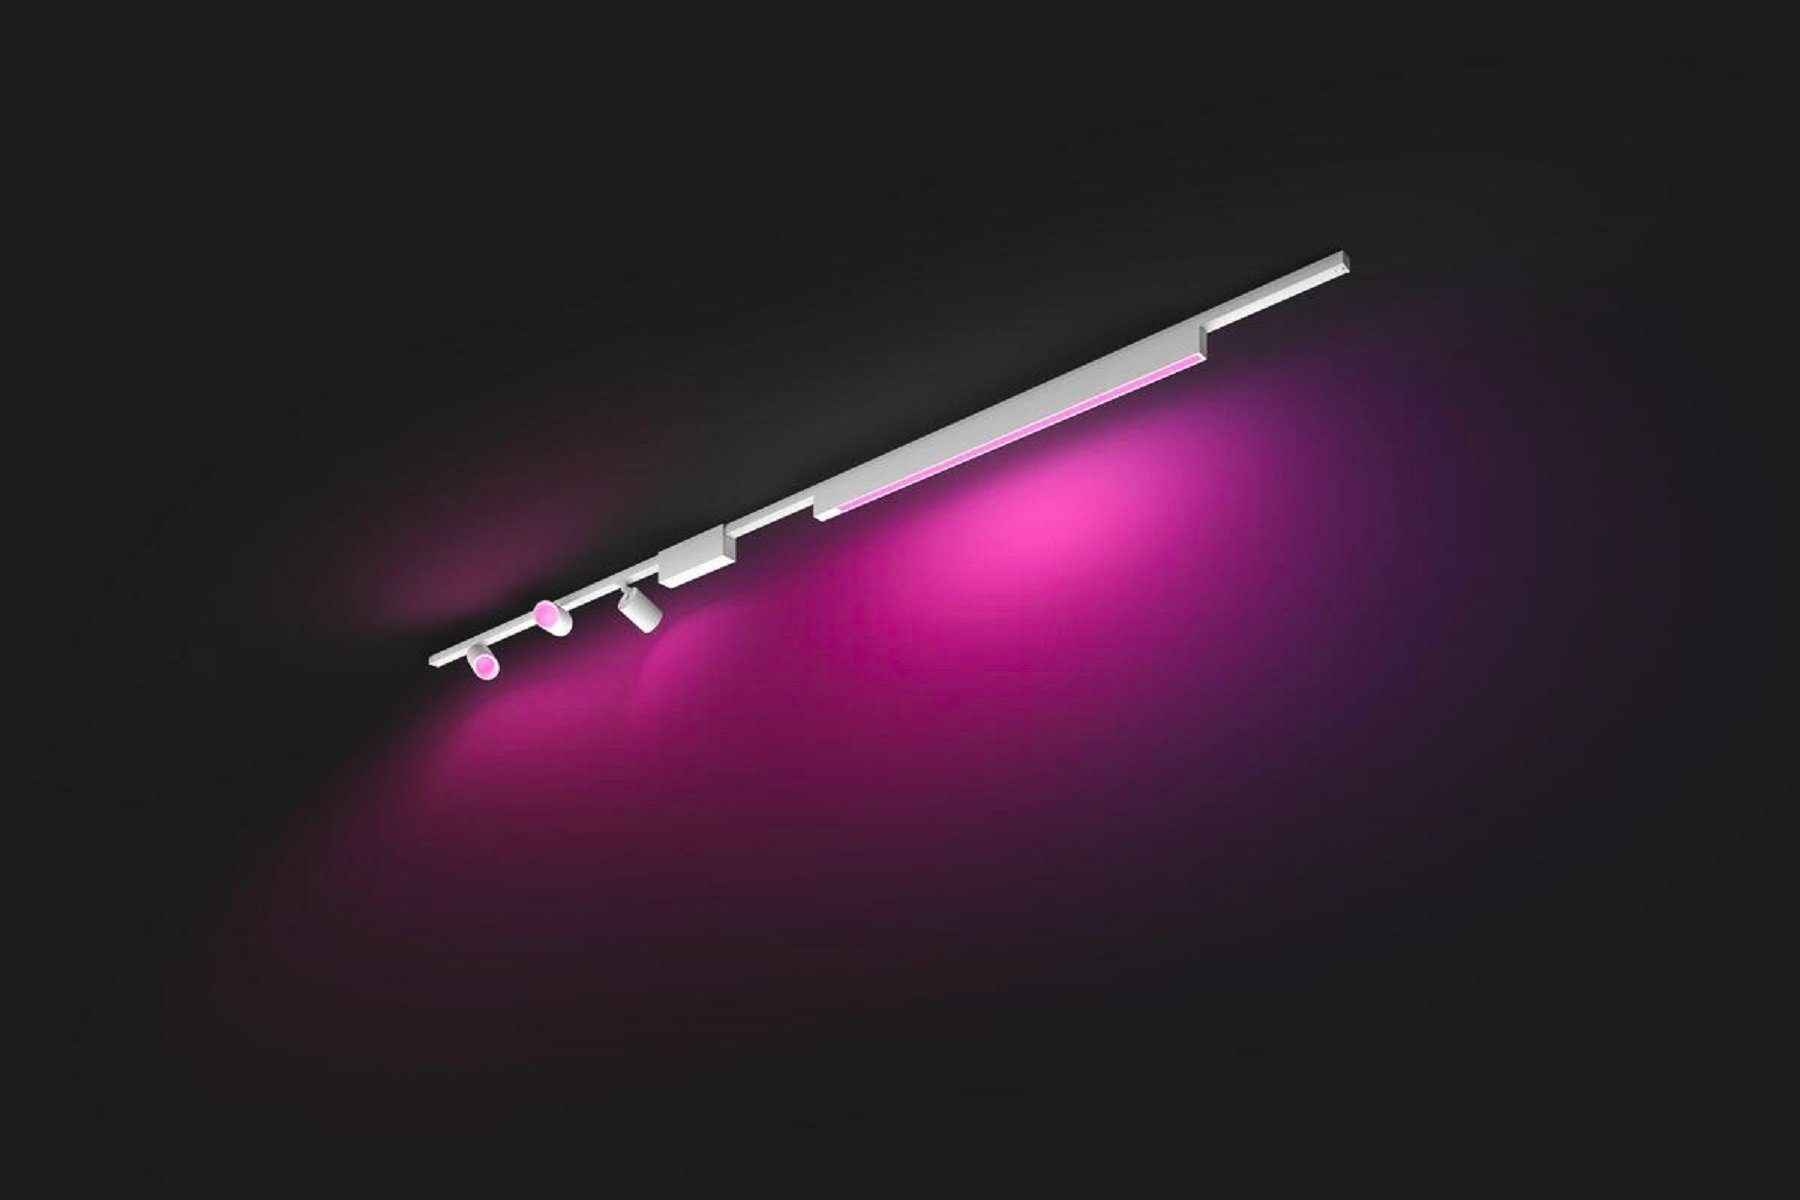 Deckenleuchte Deckenleuchten + Perifo Lightbar, Hue LED Spots Philips wechselbar